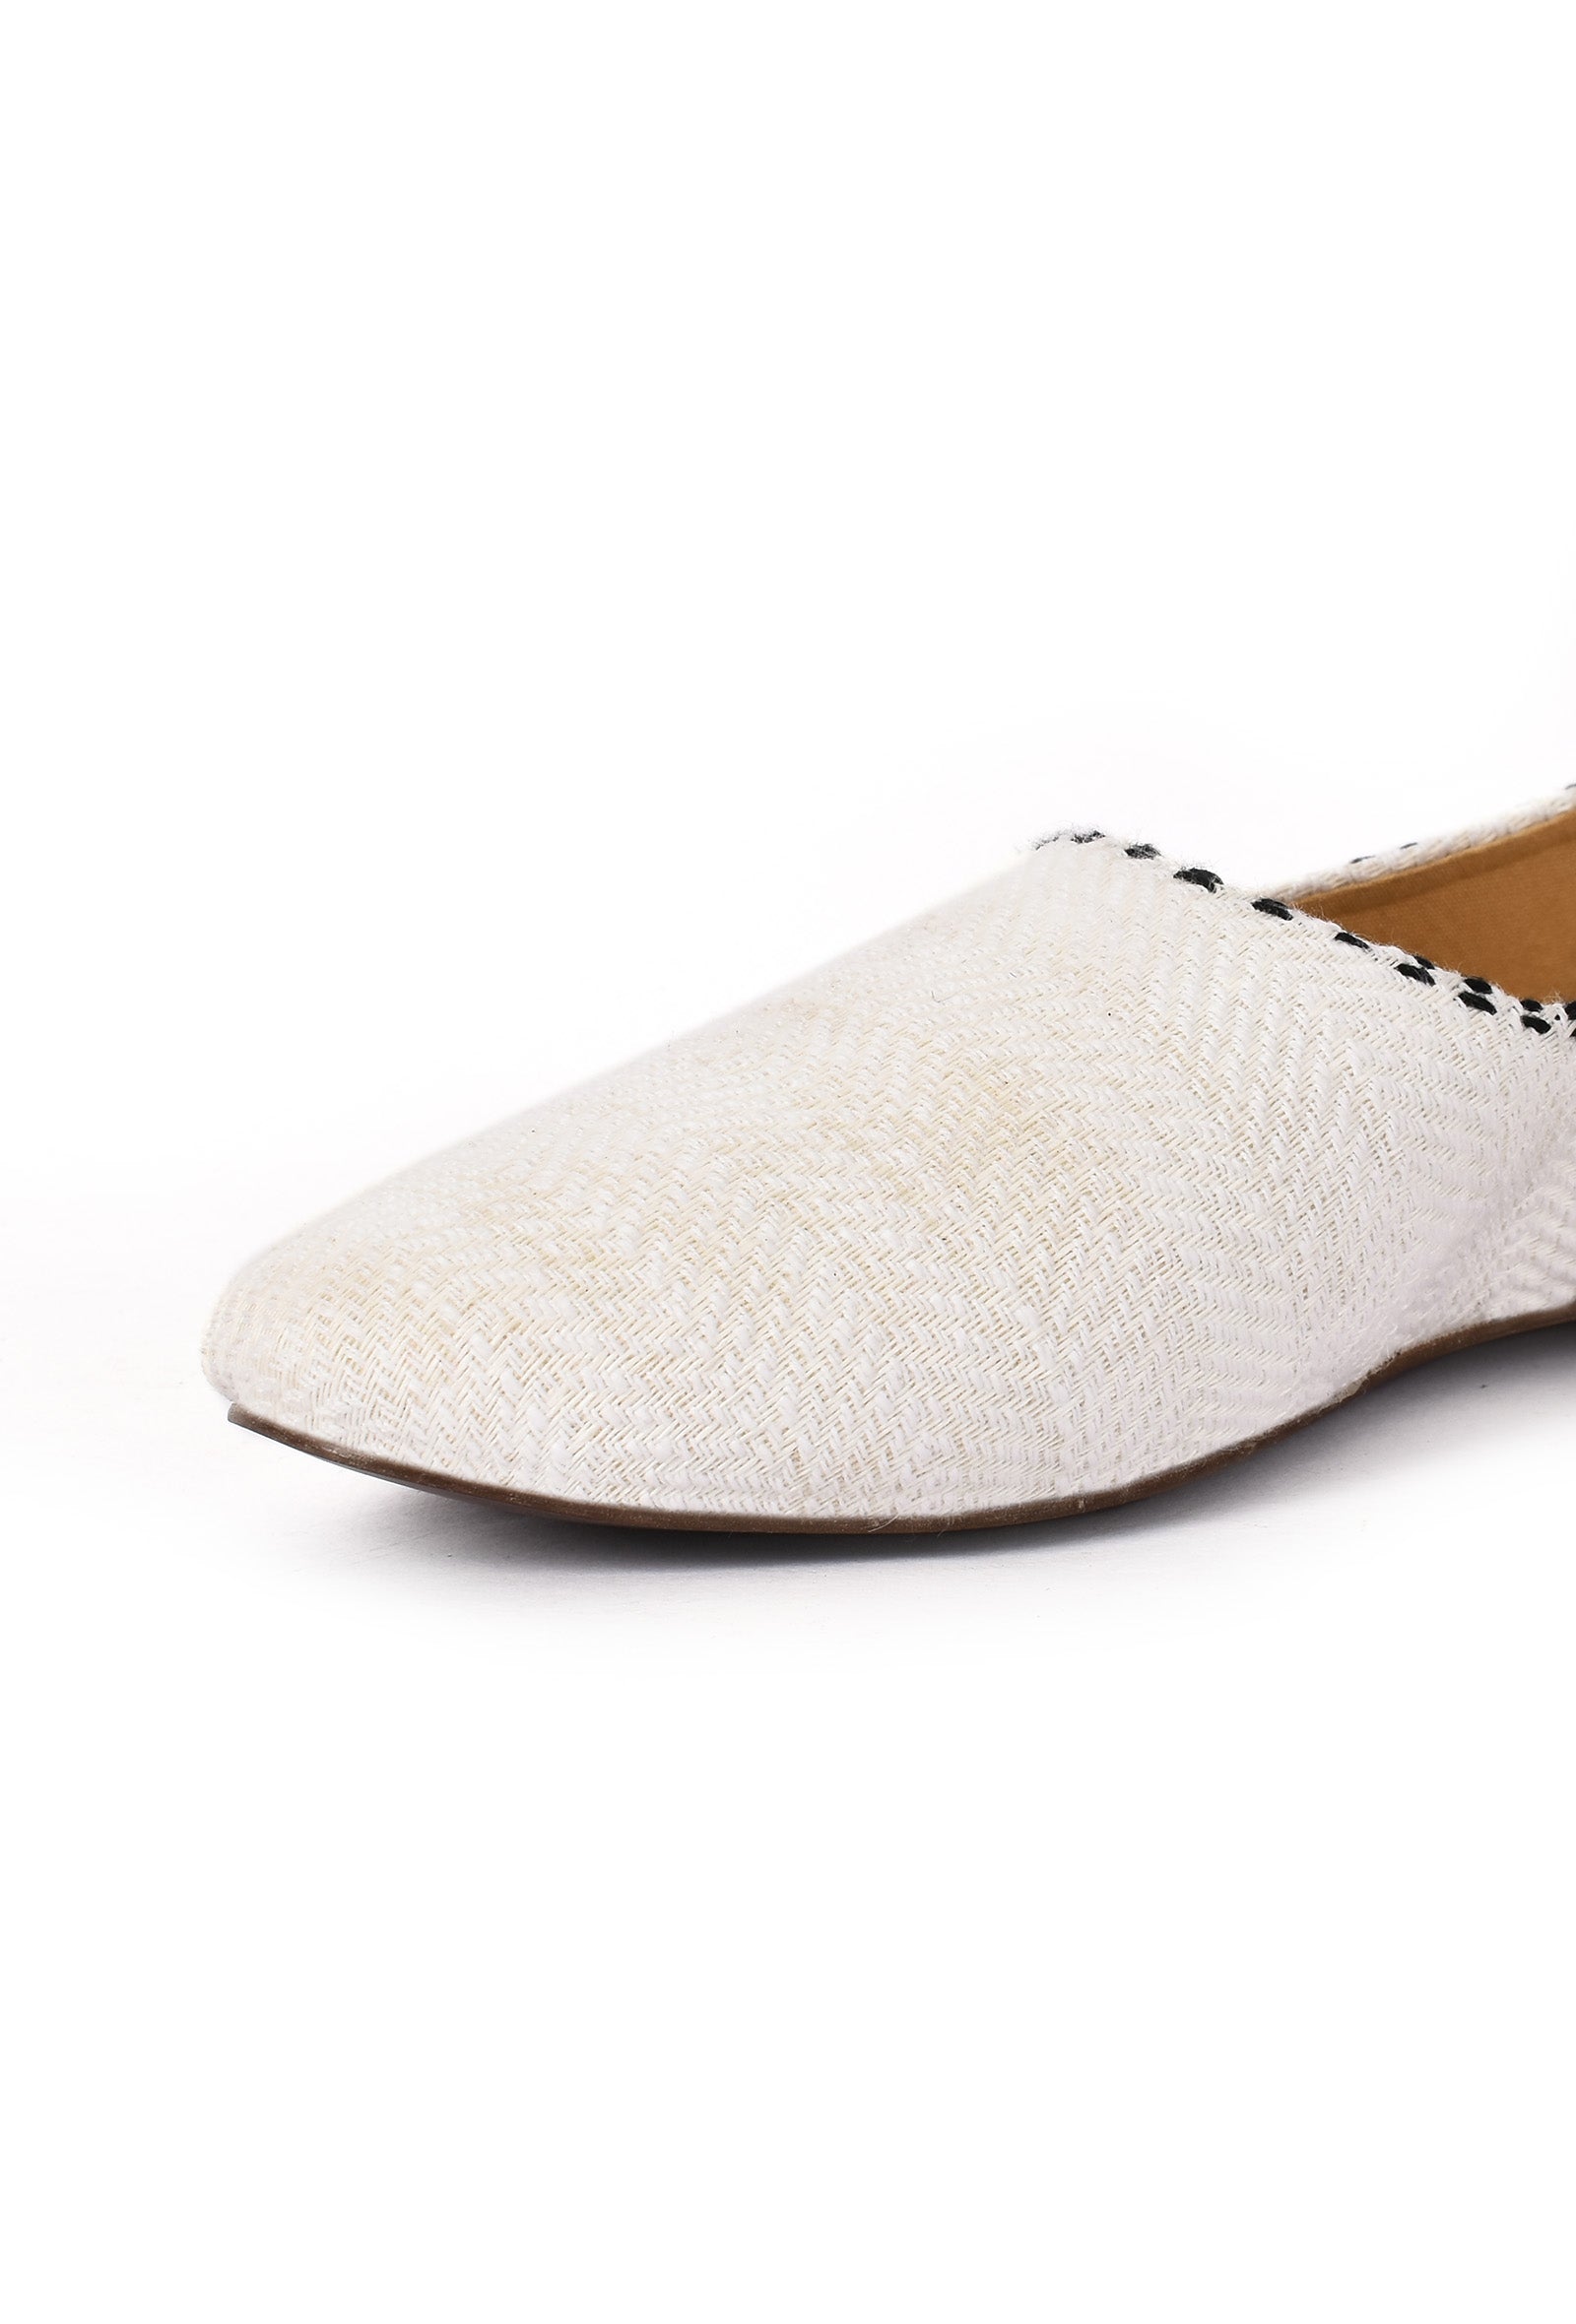 Irish White Pure Hemp Loafers